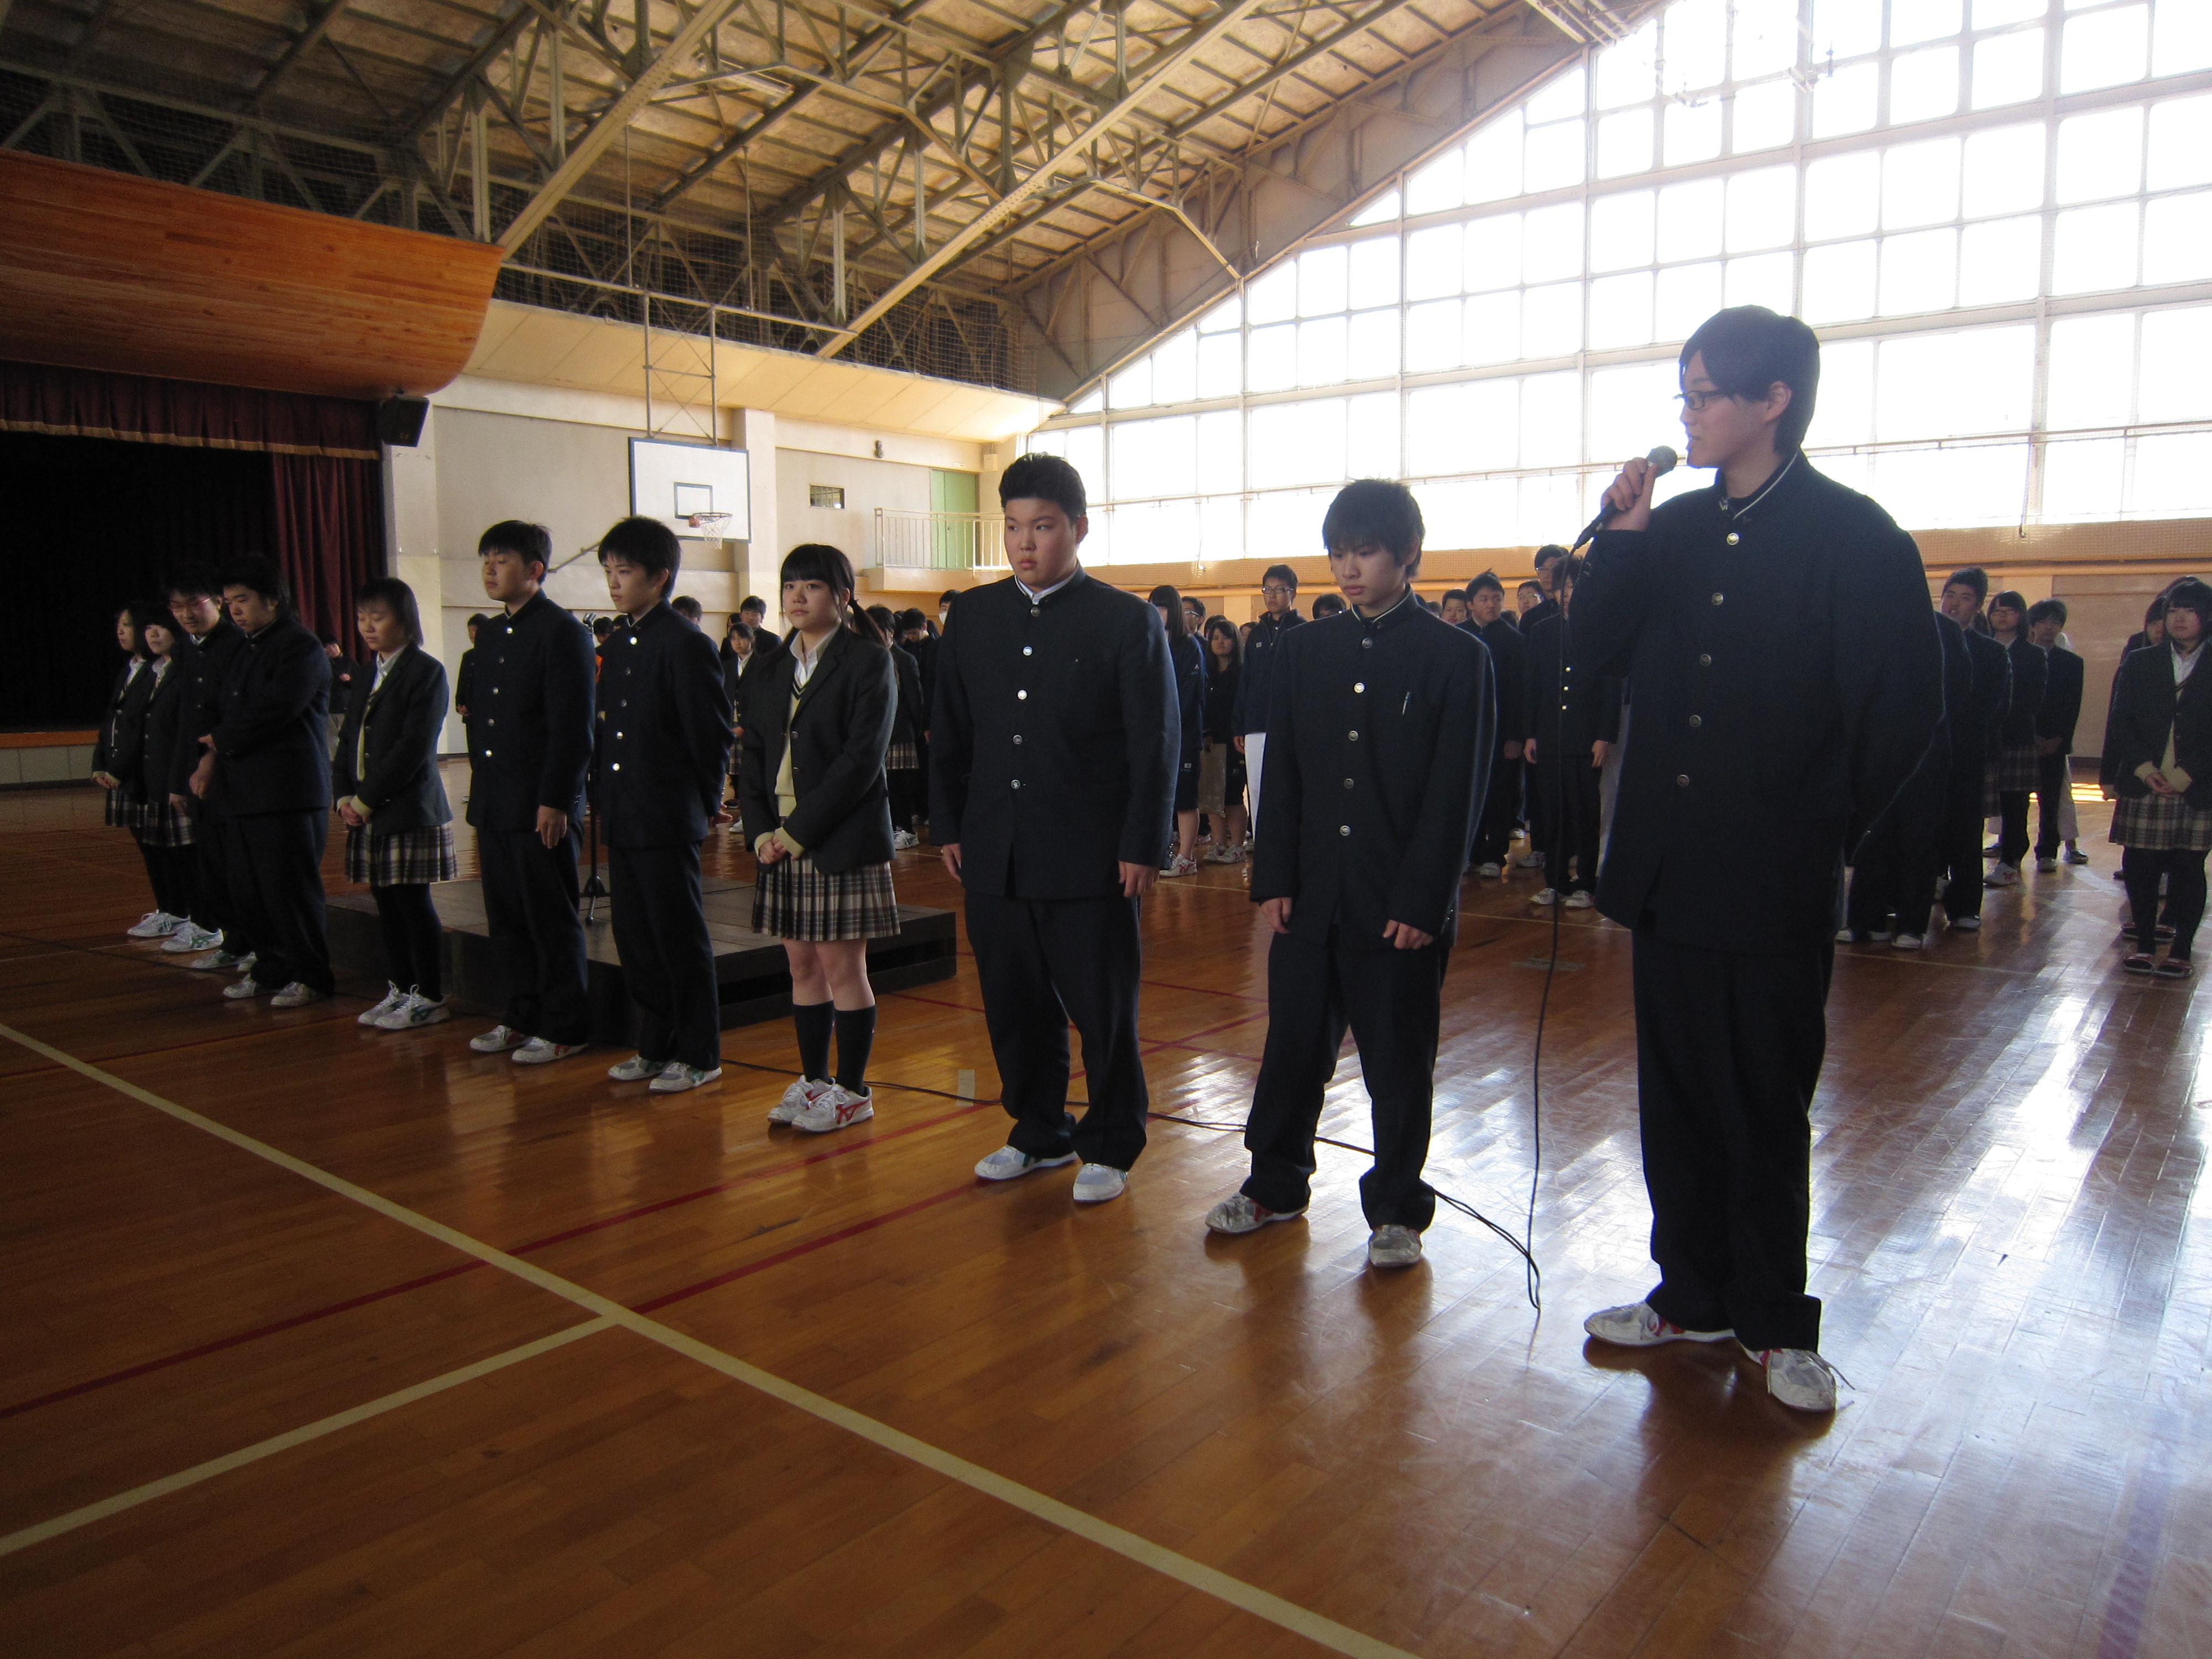 日本高校相片列表頁277 Uniform Map 制服地圖